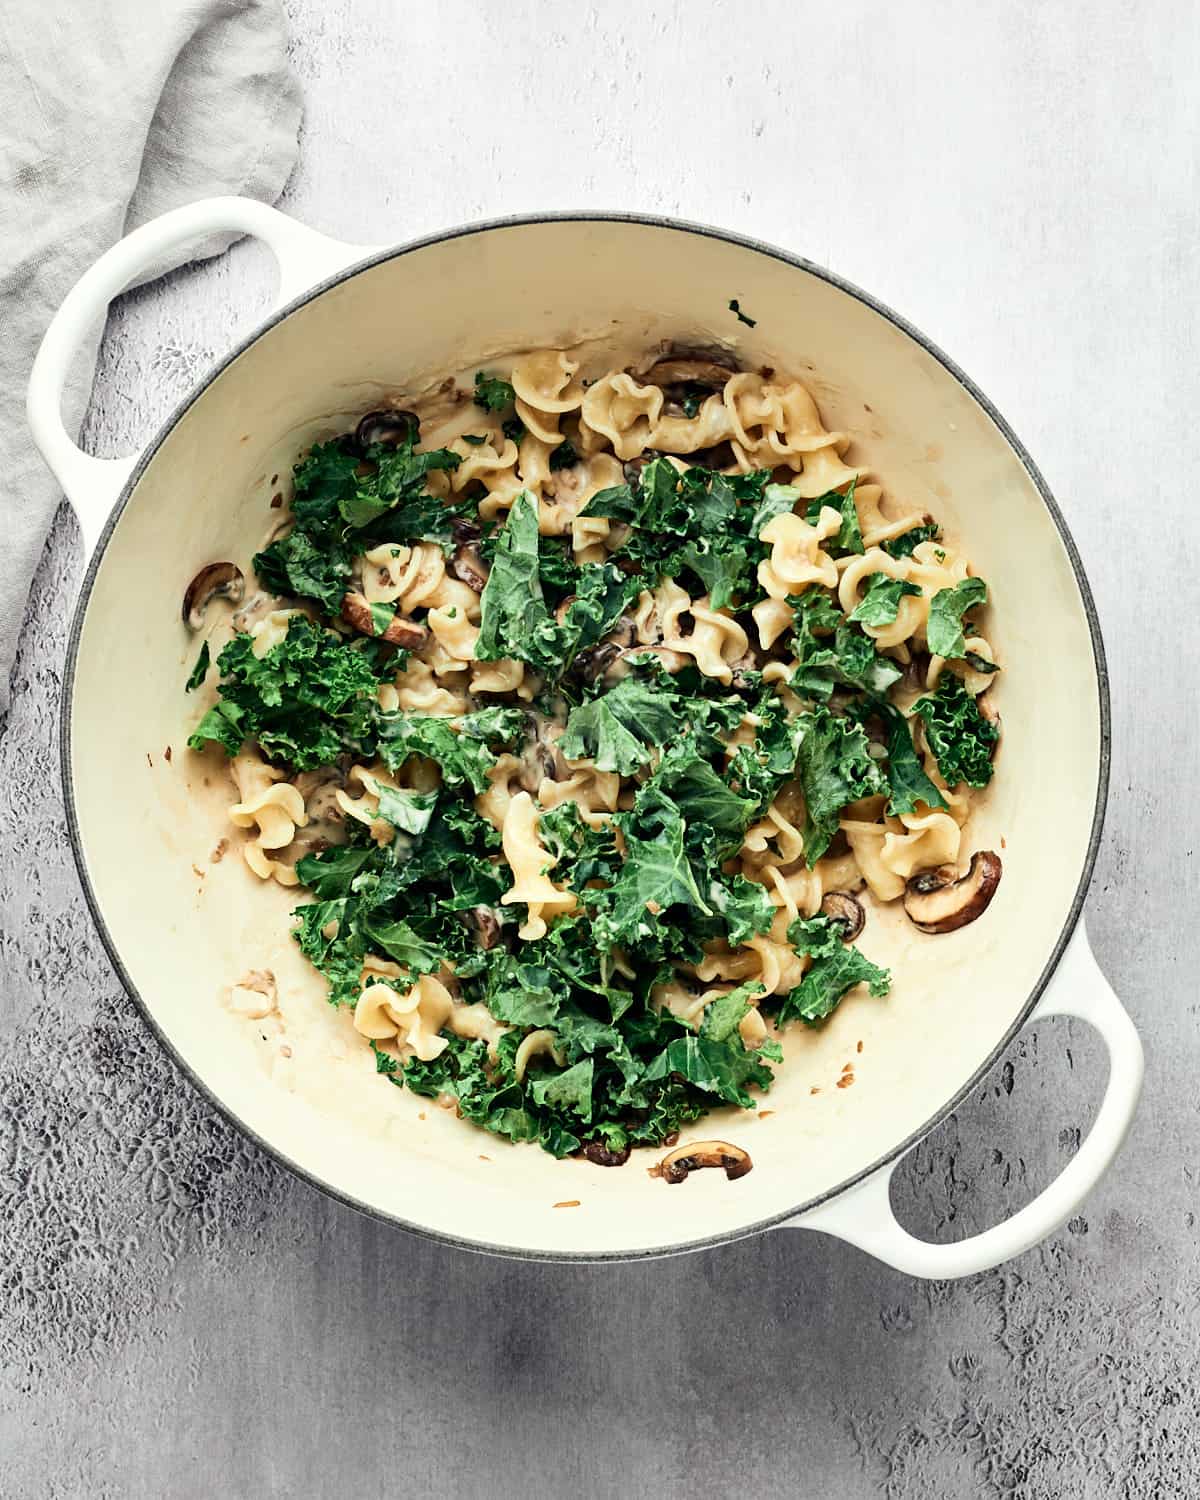 op view of kale, mushrooms, and pasta in saucepan.